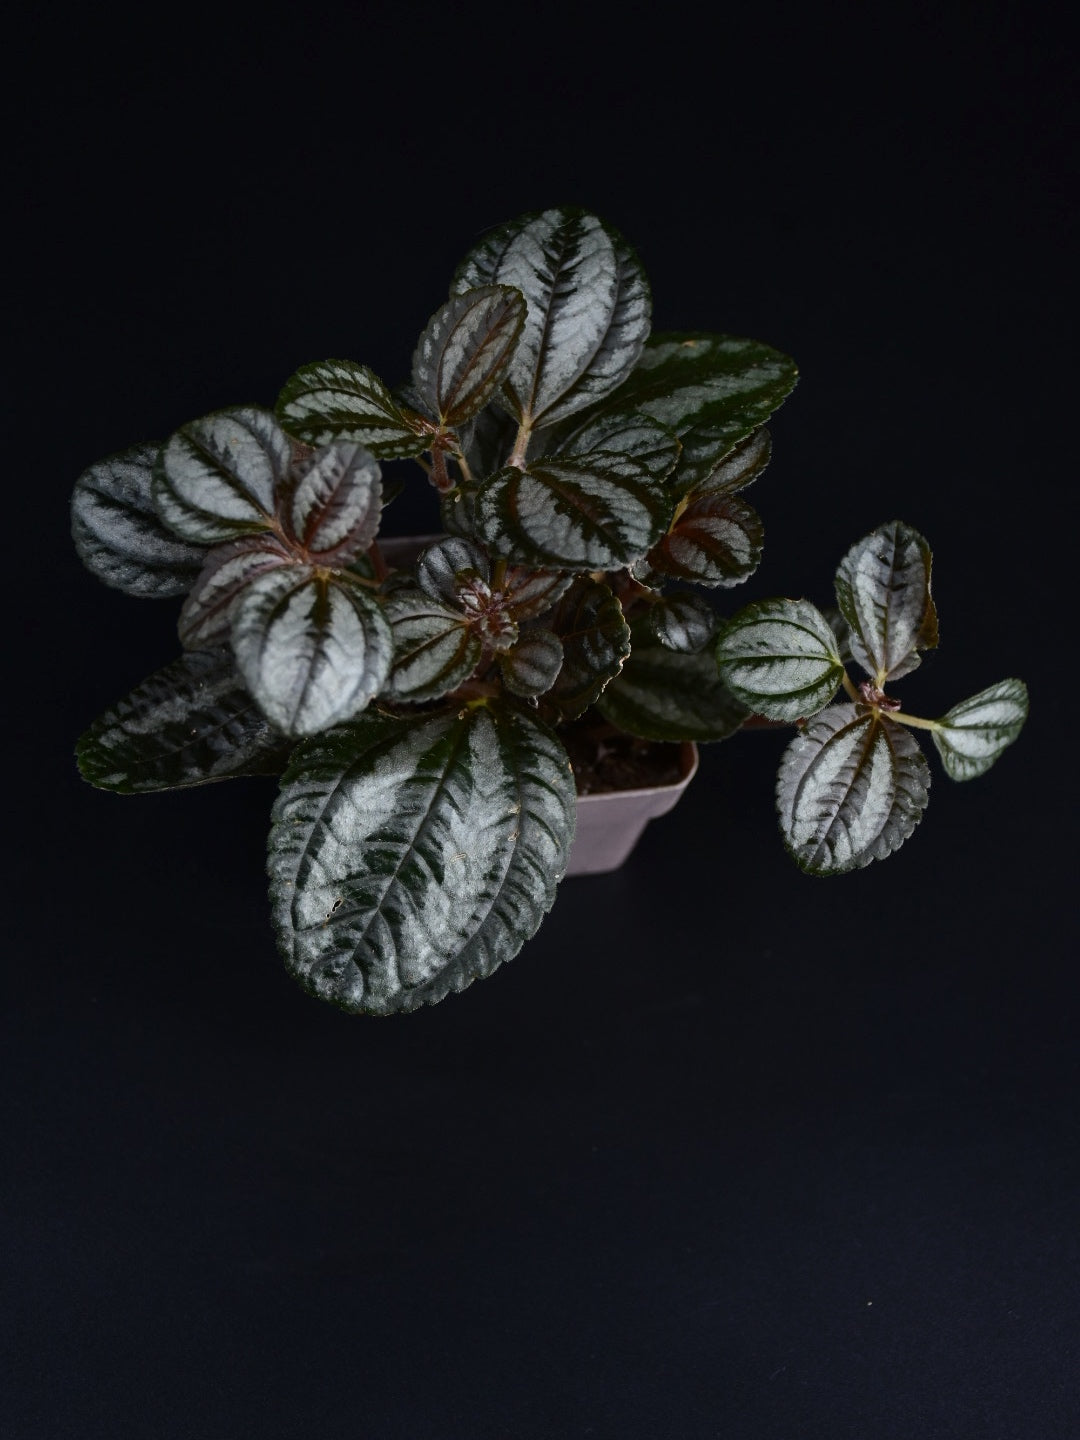 Pilea spruceana “Friendship Plant/Norfolk"